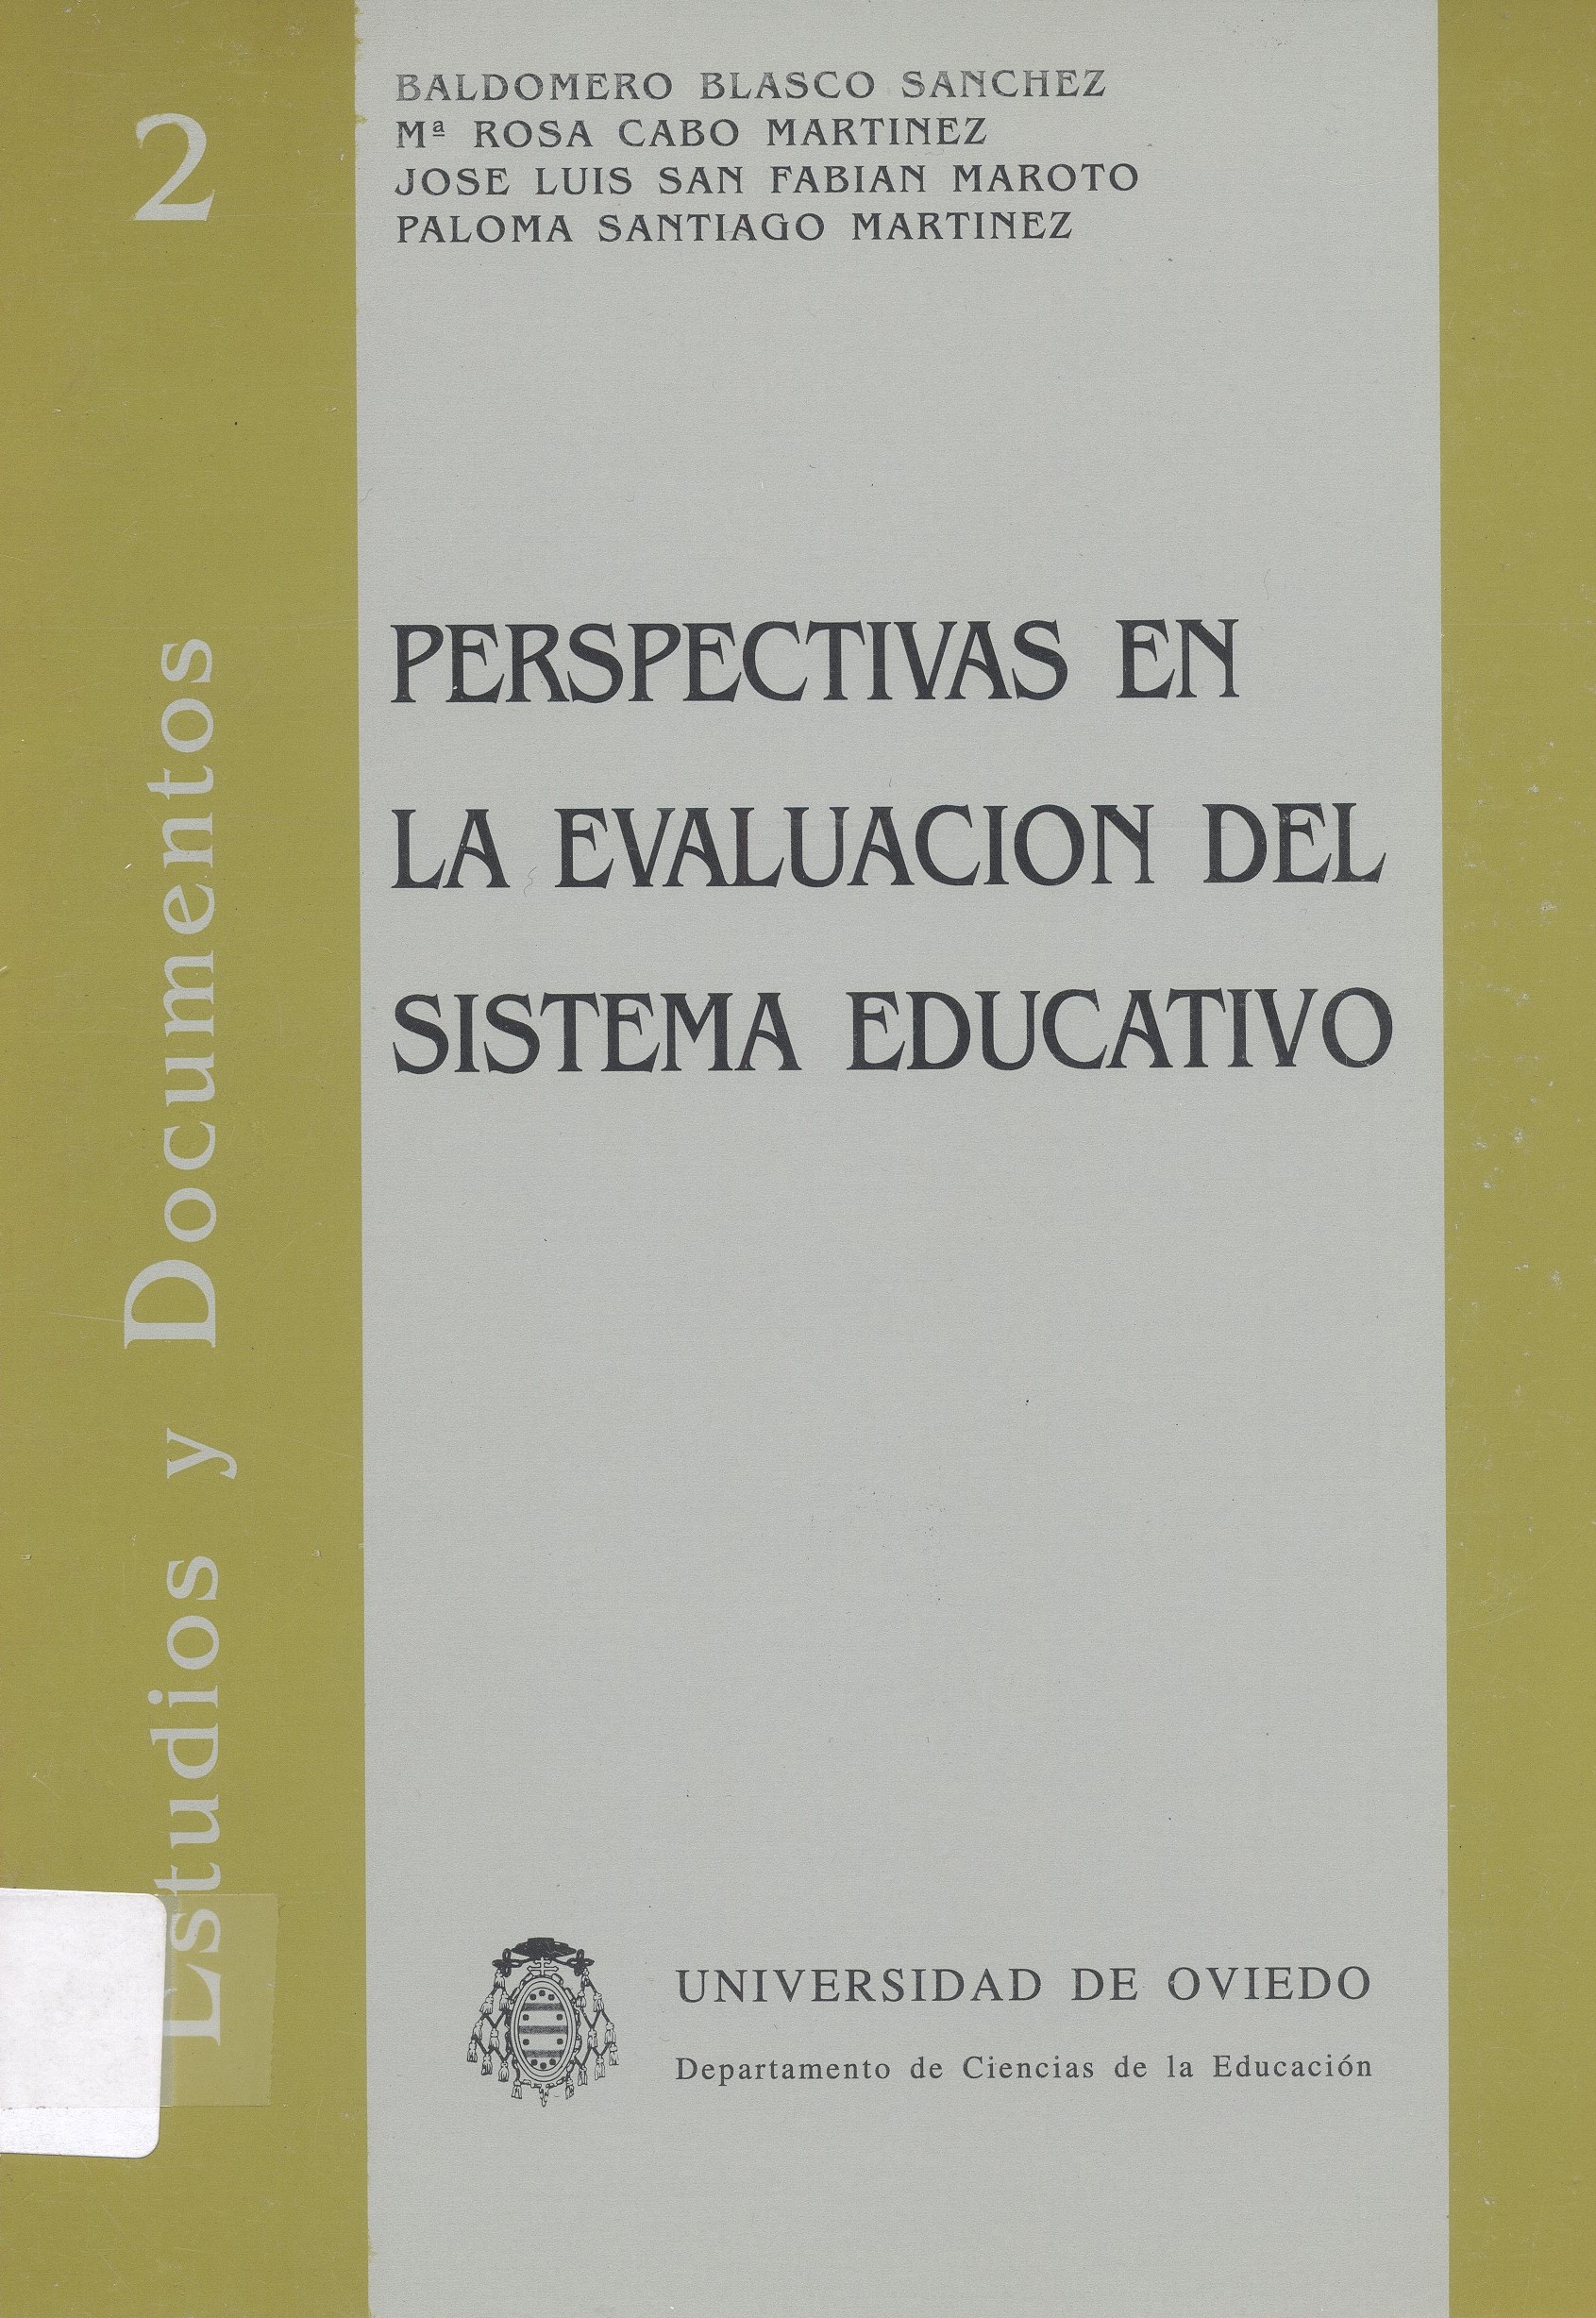 Imagen de portada del libro Perspectivas en la evaluación del sistema educativo